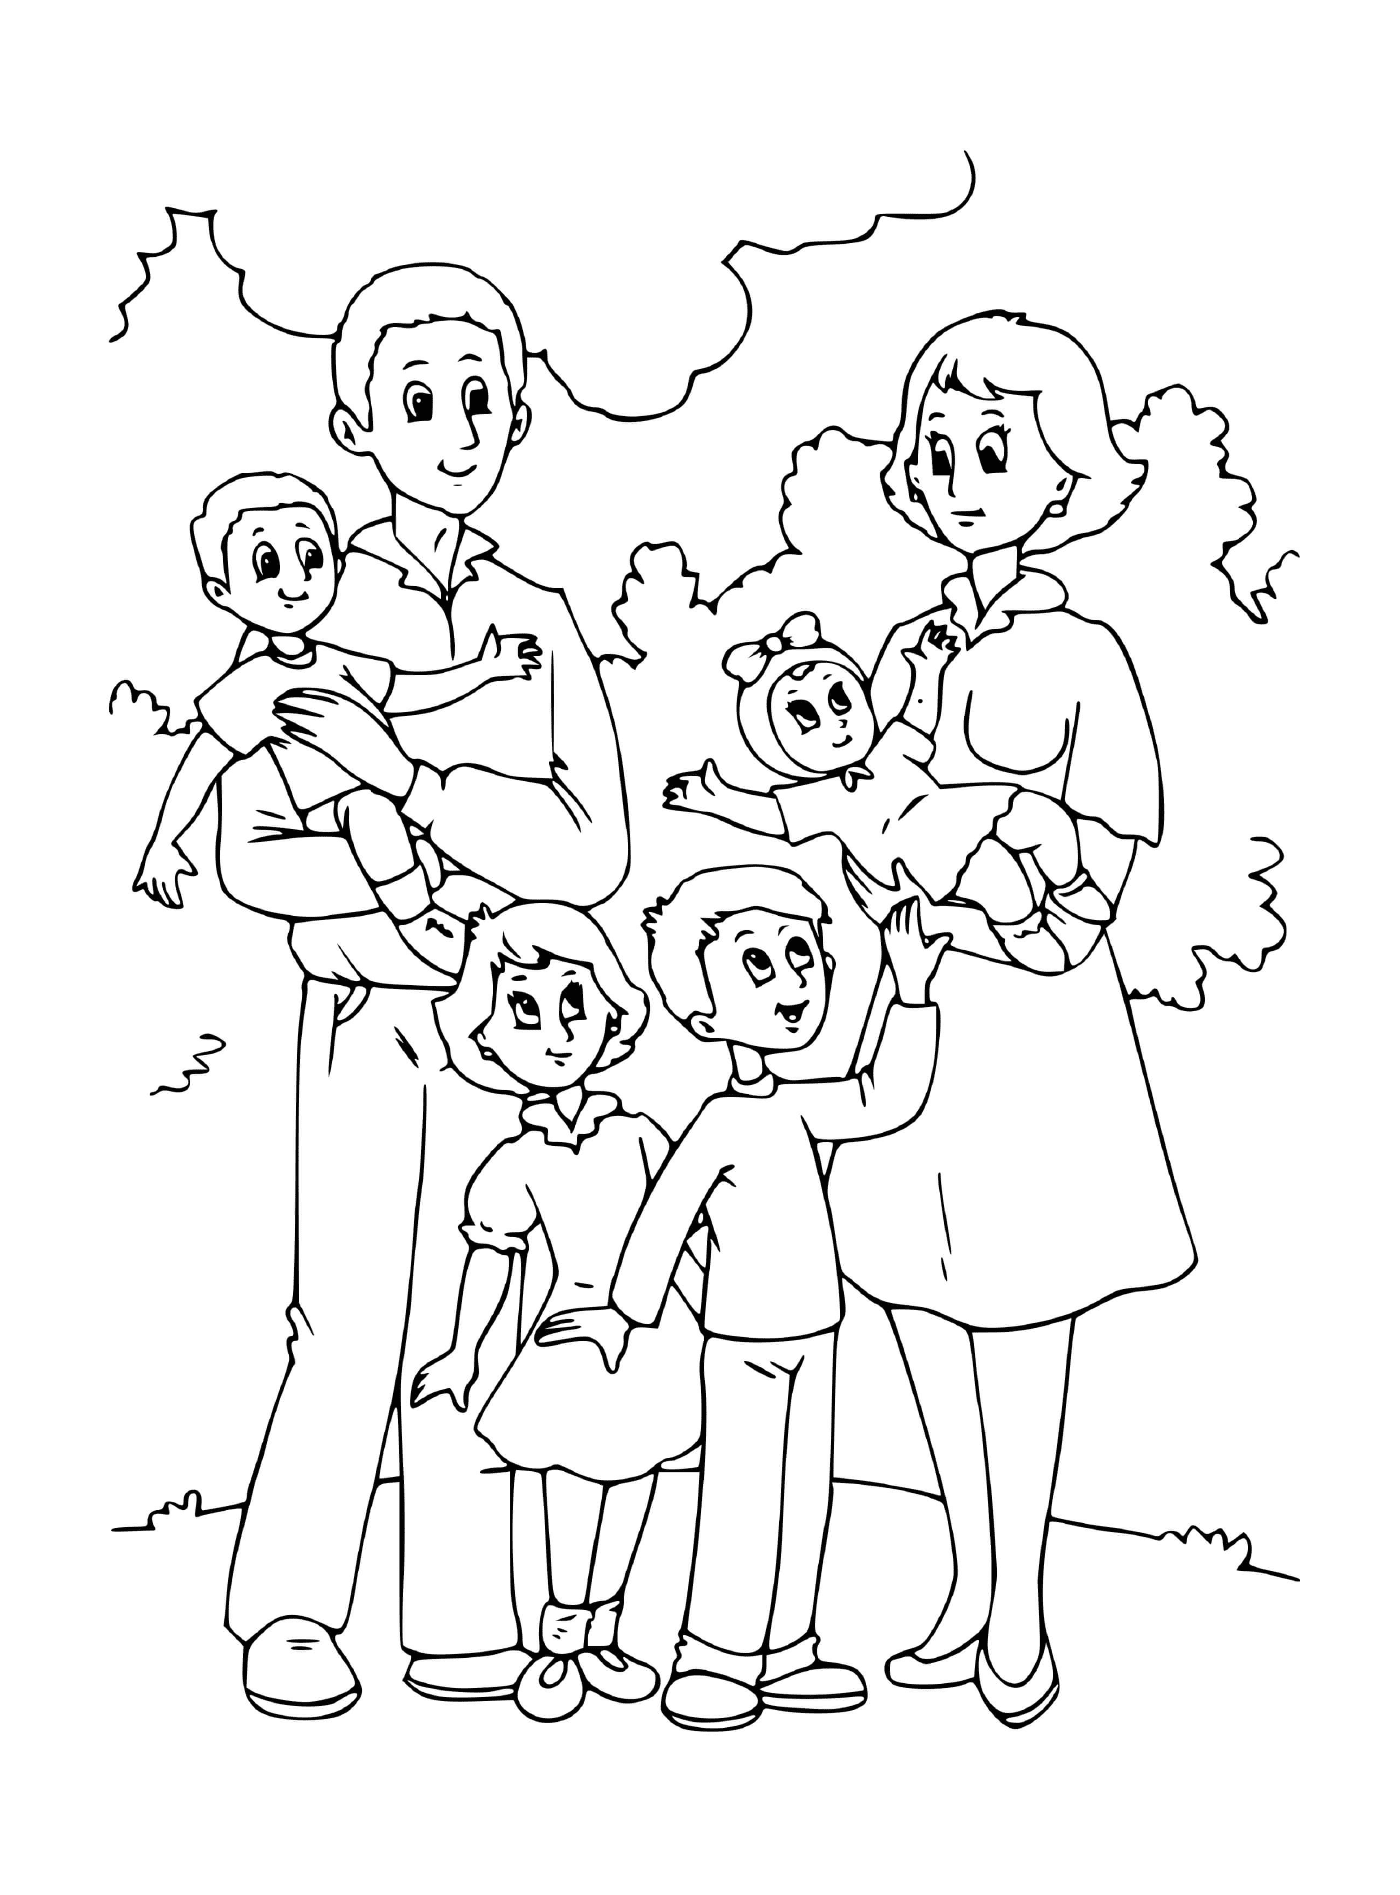  Eine Familie mit mehreren Kindern und ihren Eltern 